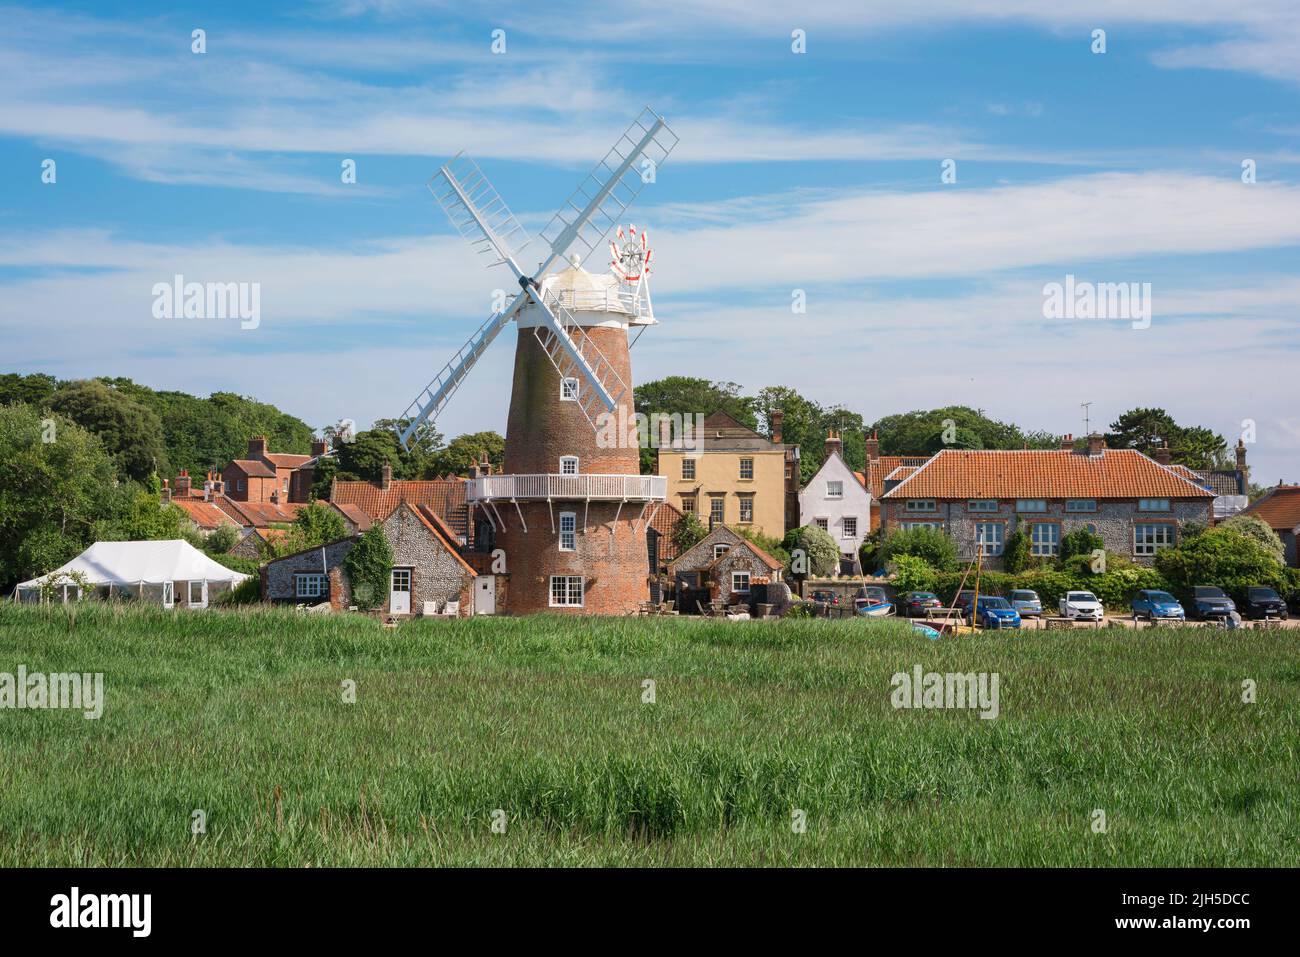 Cley am Meer, Blick im Sommer auf die Windmühle aus dem 18.. Jahrhundert und das Anwesen aus der Zeit im nördlichen Norfolk-Dorf Cley am Meer, England, Großbritannien Stockfoto